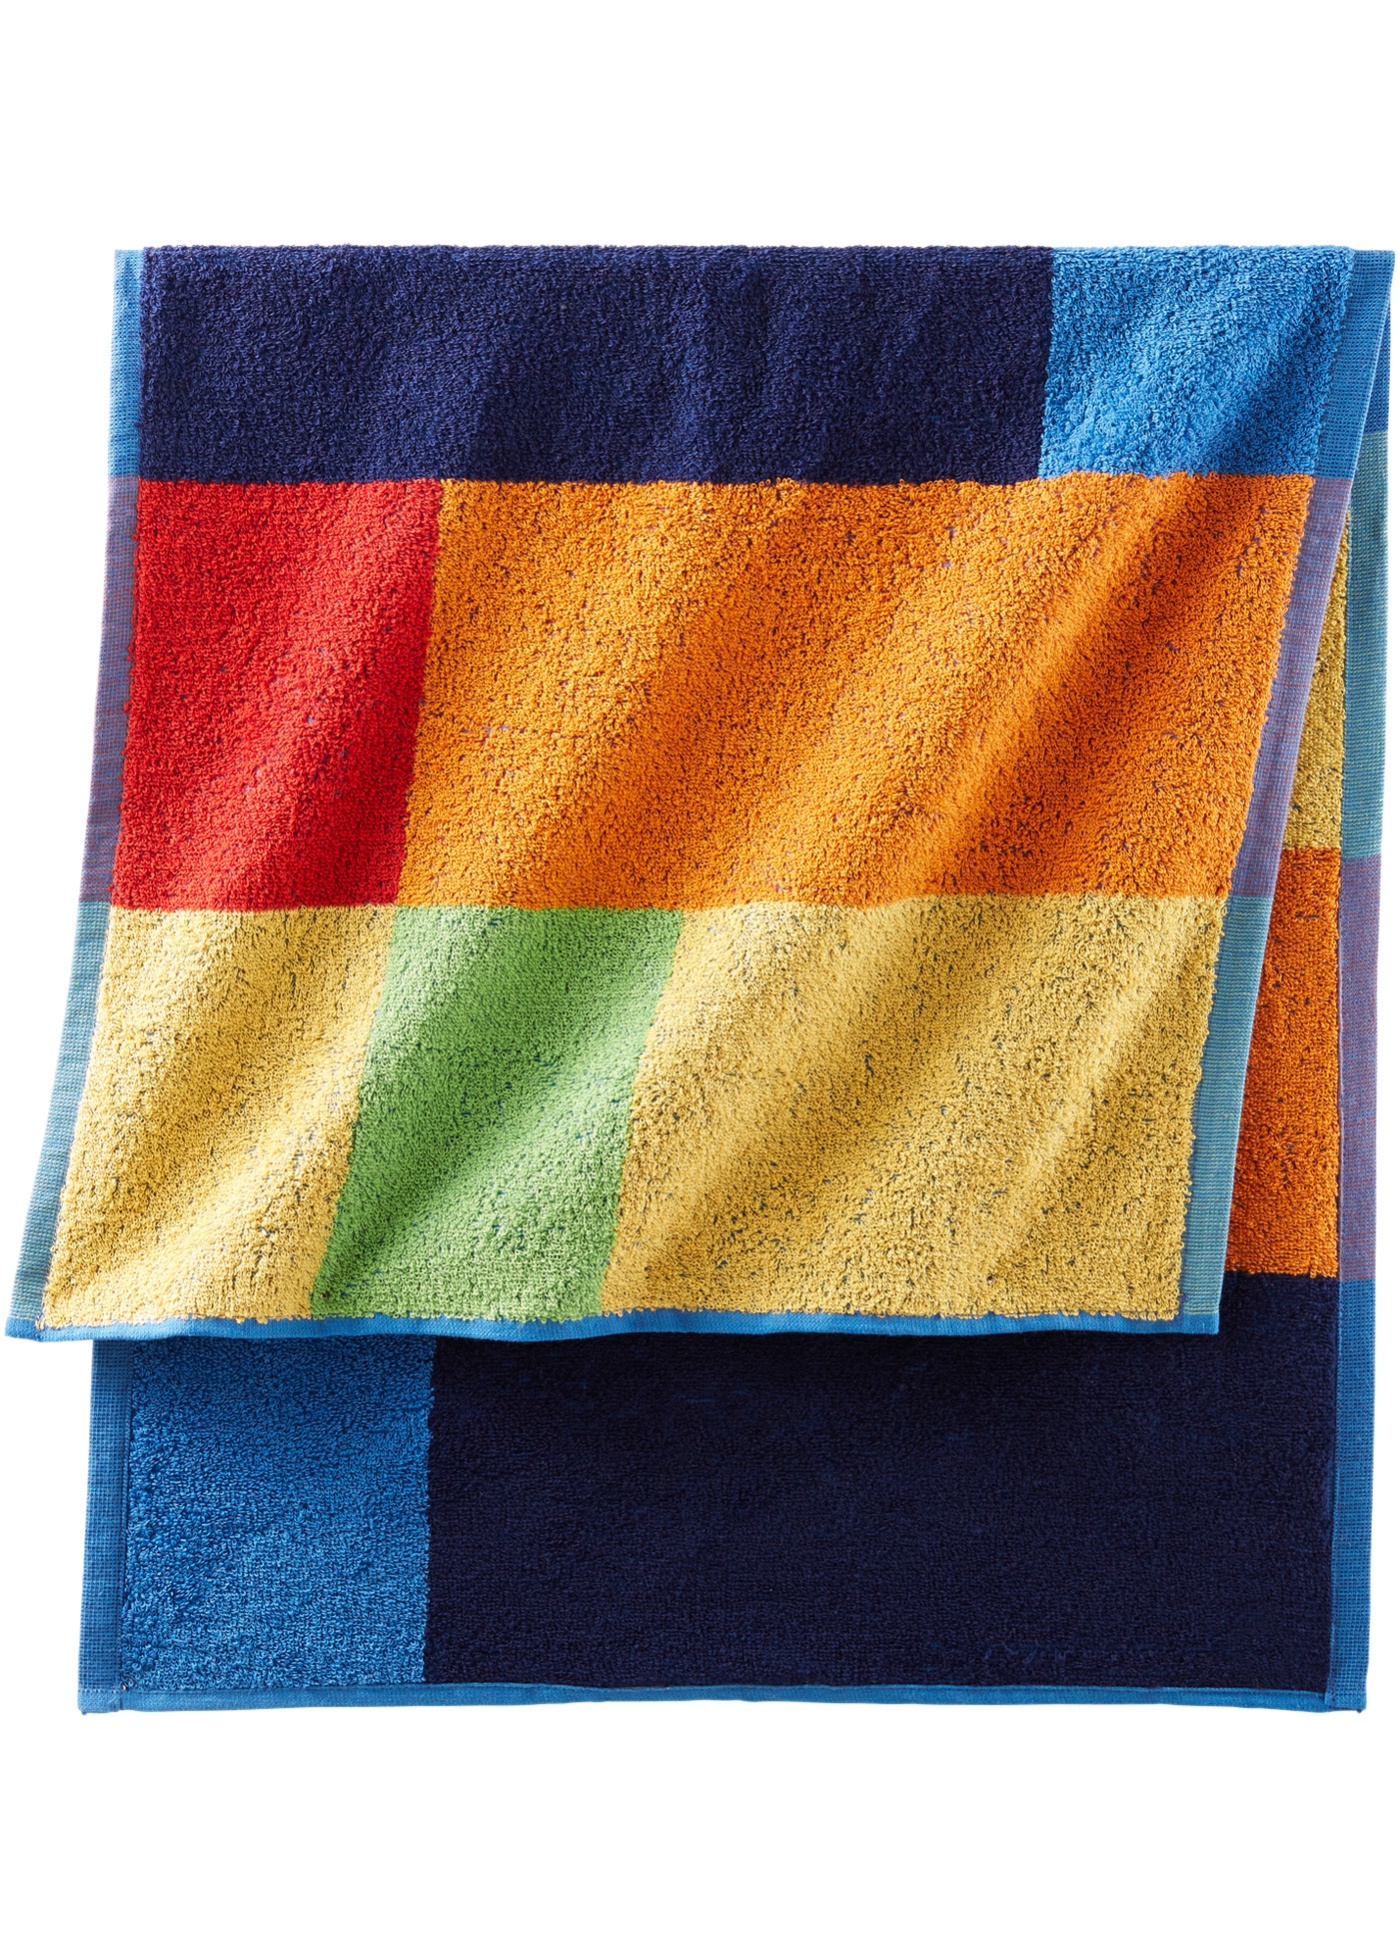 Baumwoll Handtuch in farbenfrohem Design (94270795) in bunt